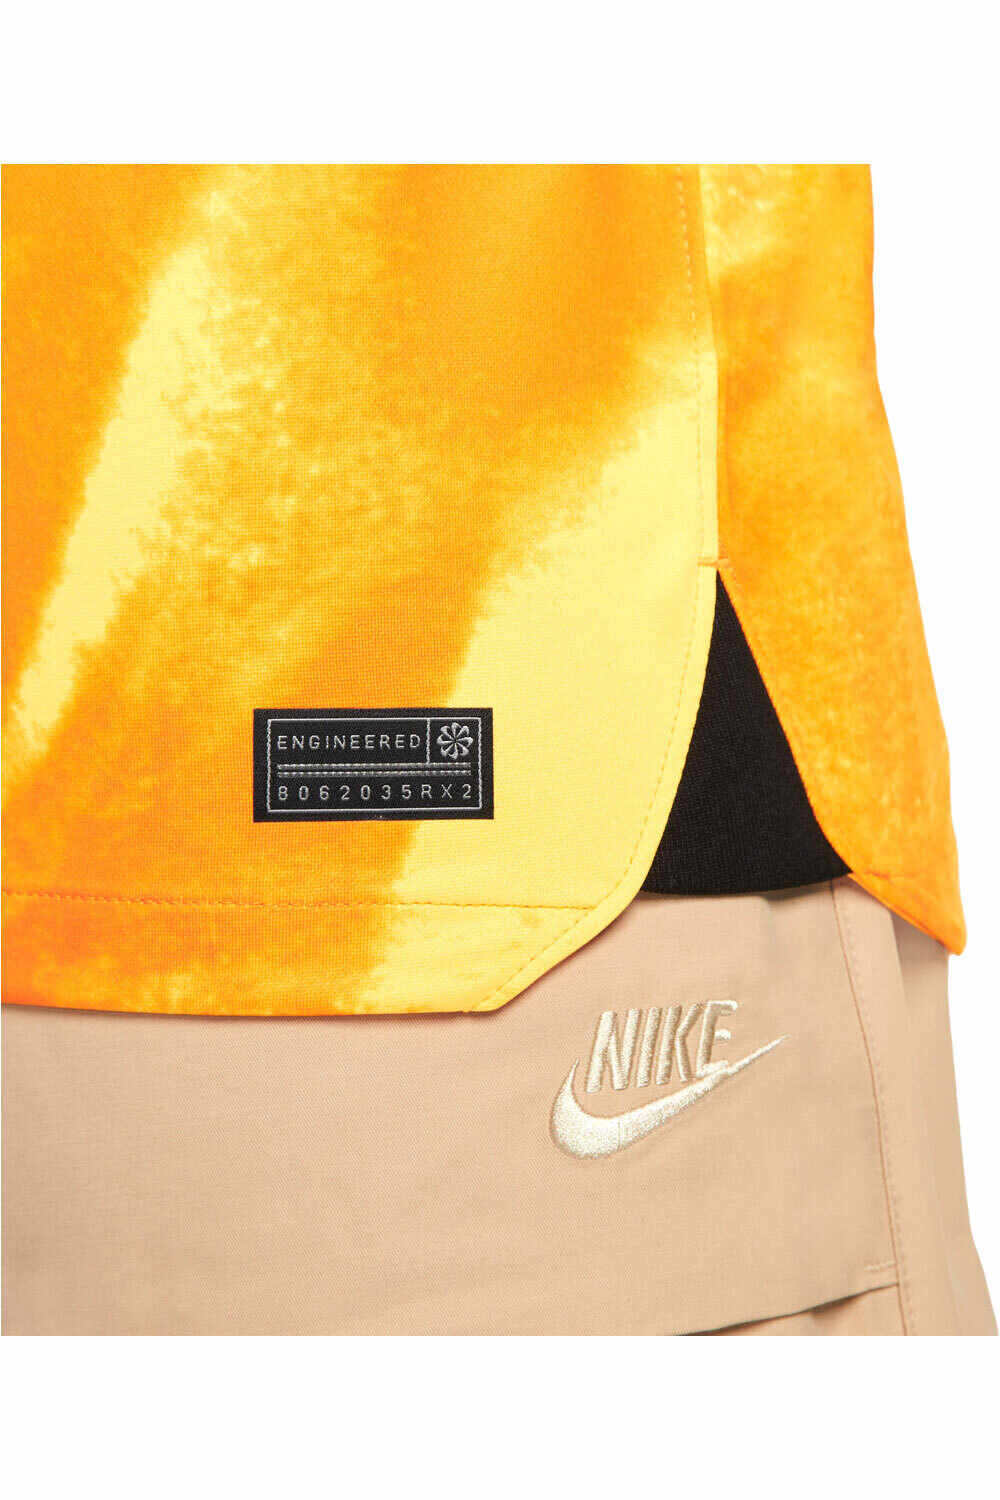 Nike camiseta de fútbol oficiales CAMISETA HOLANDA PRIMERA EQUIPACION 2022 03